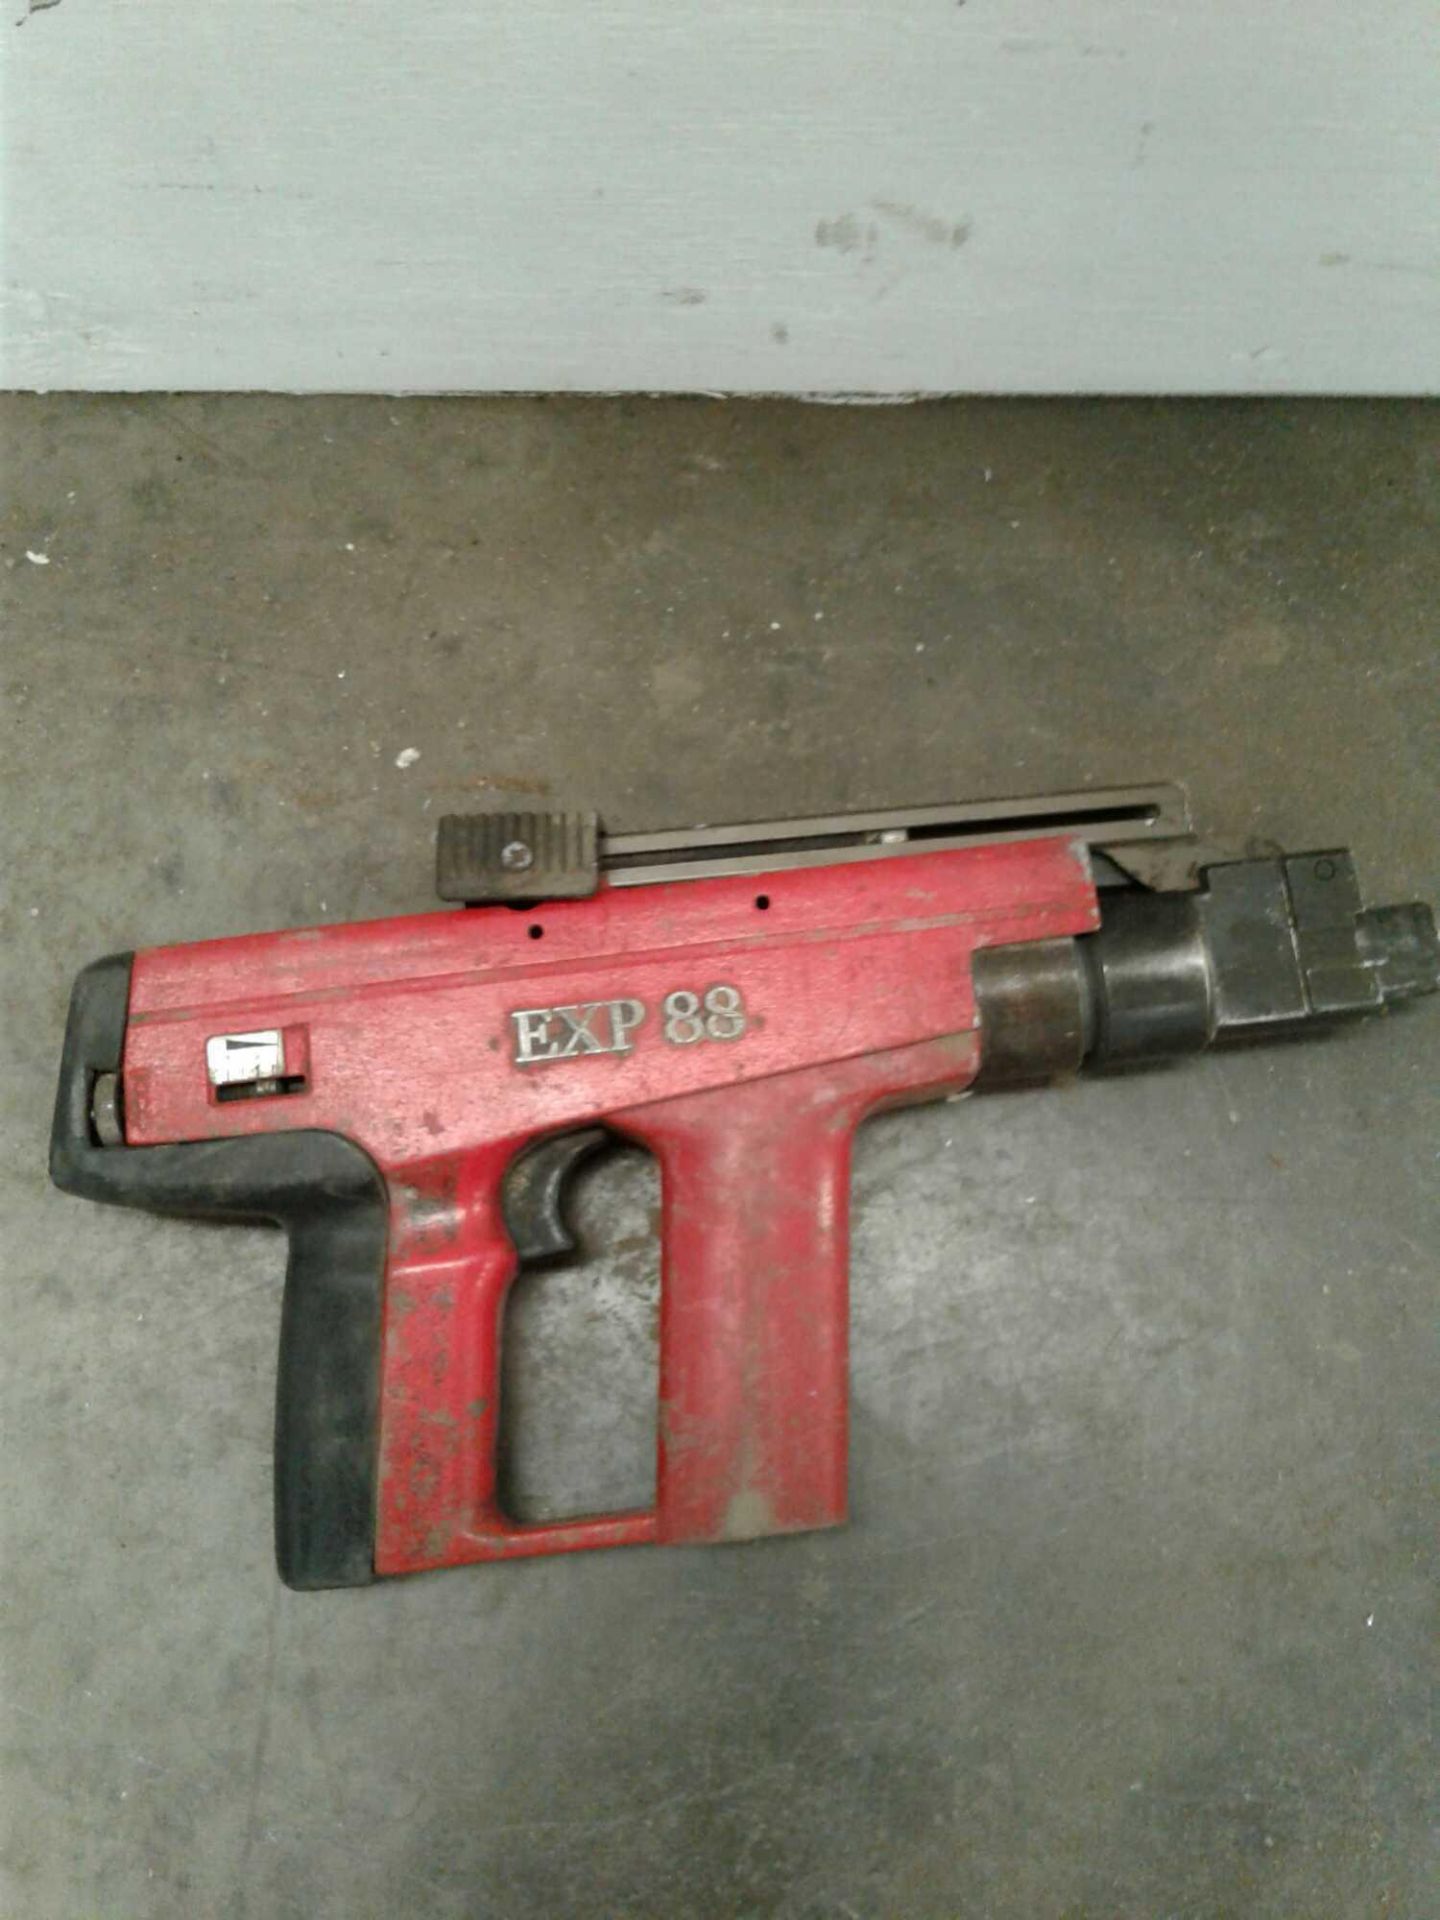 EXP 88 nail gun - Image 2 of 2